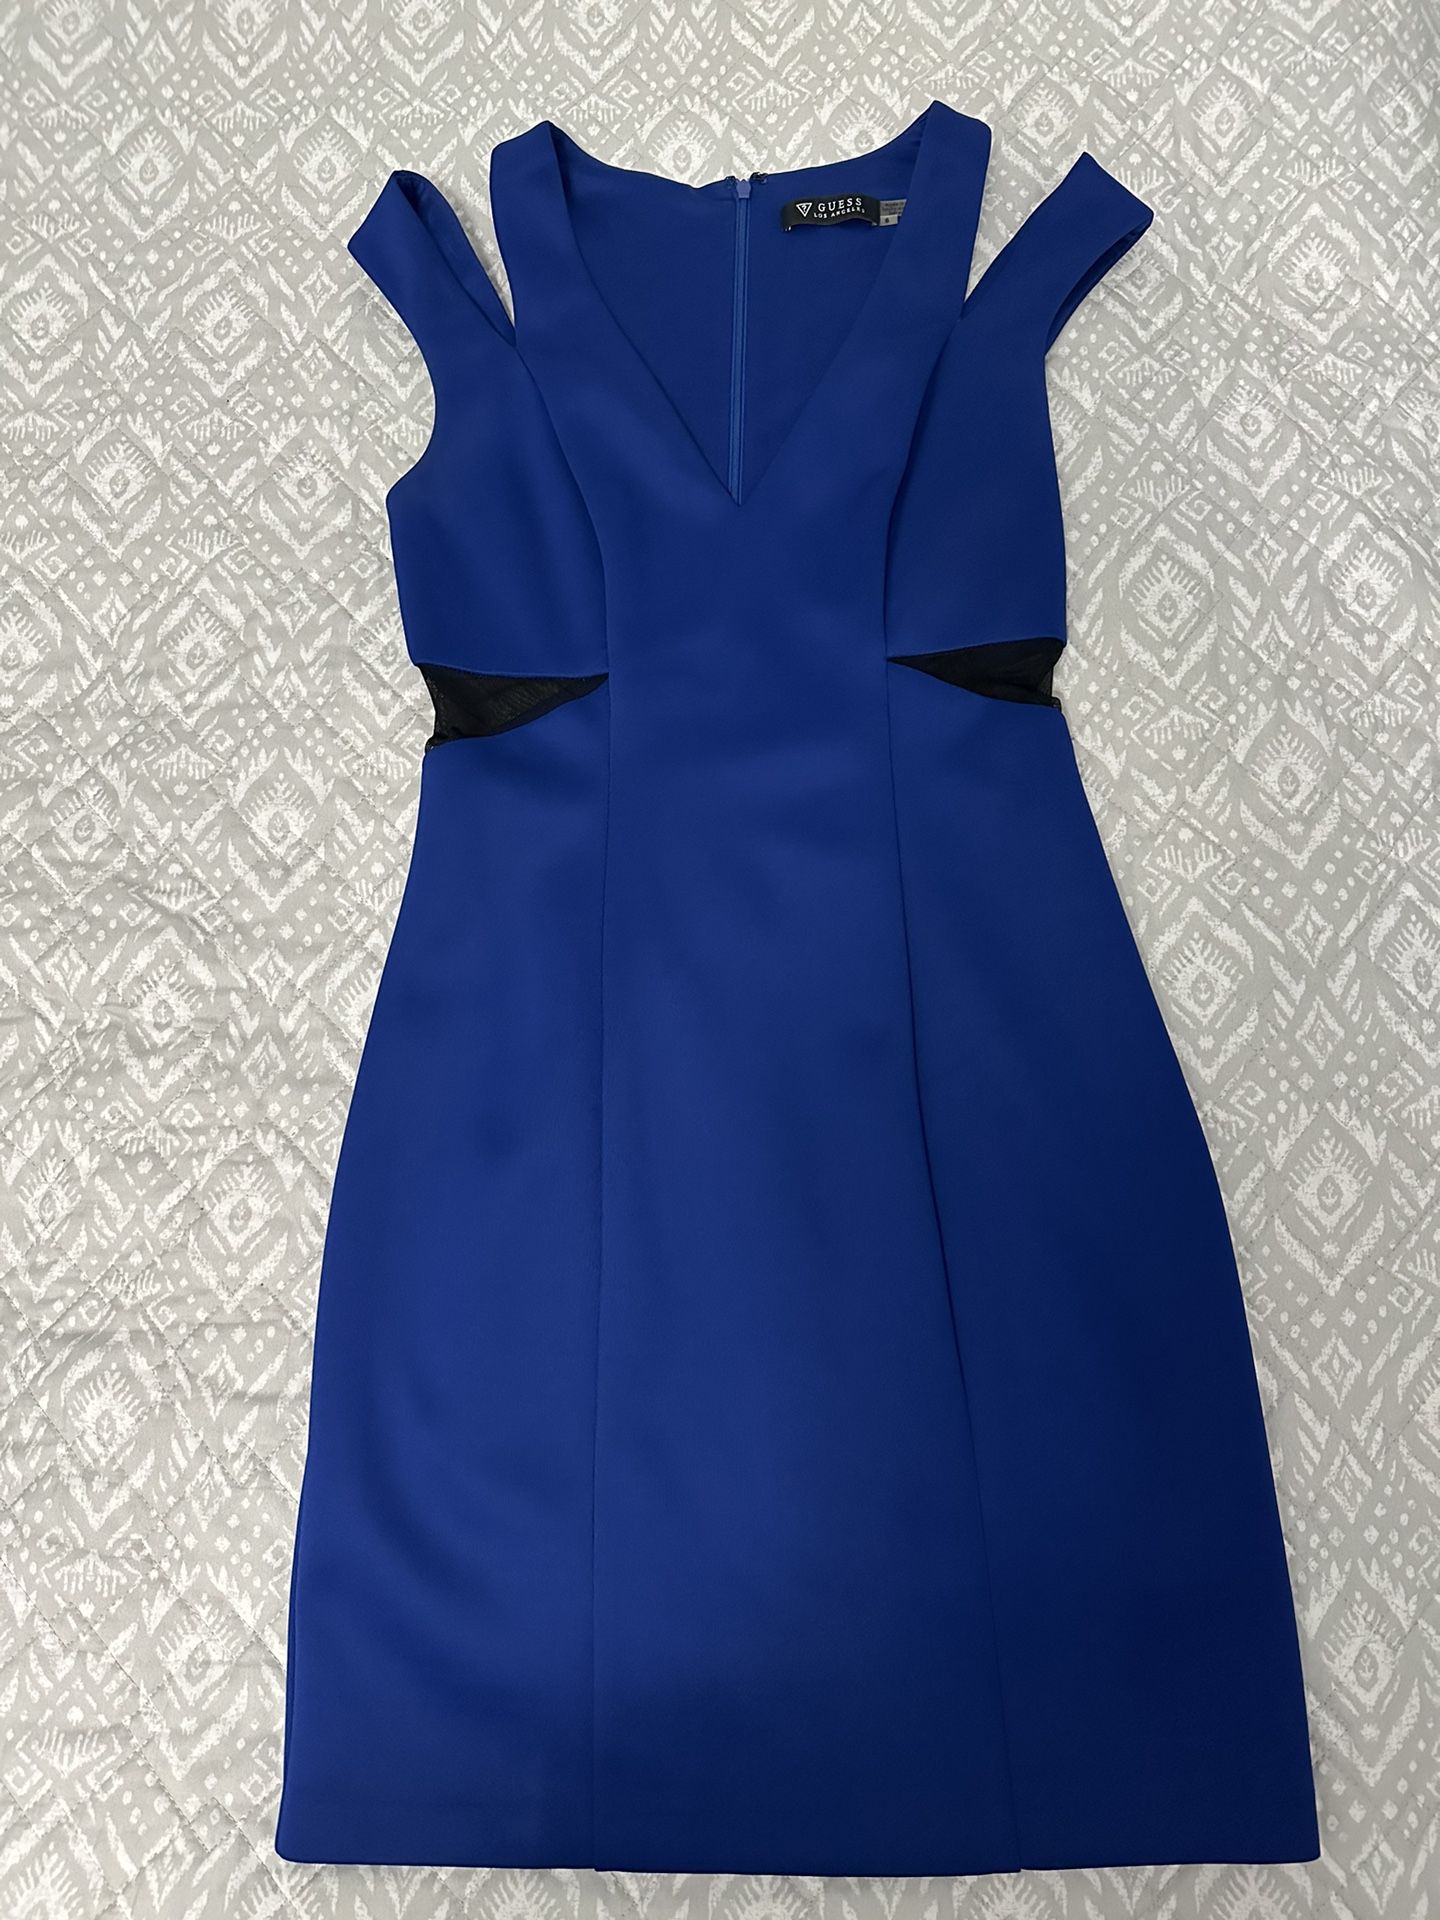 Royal Blue Women’s Dress